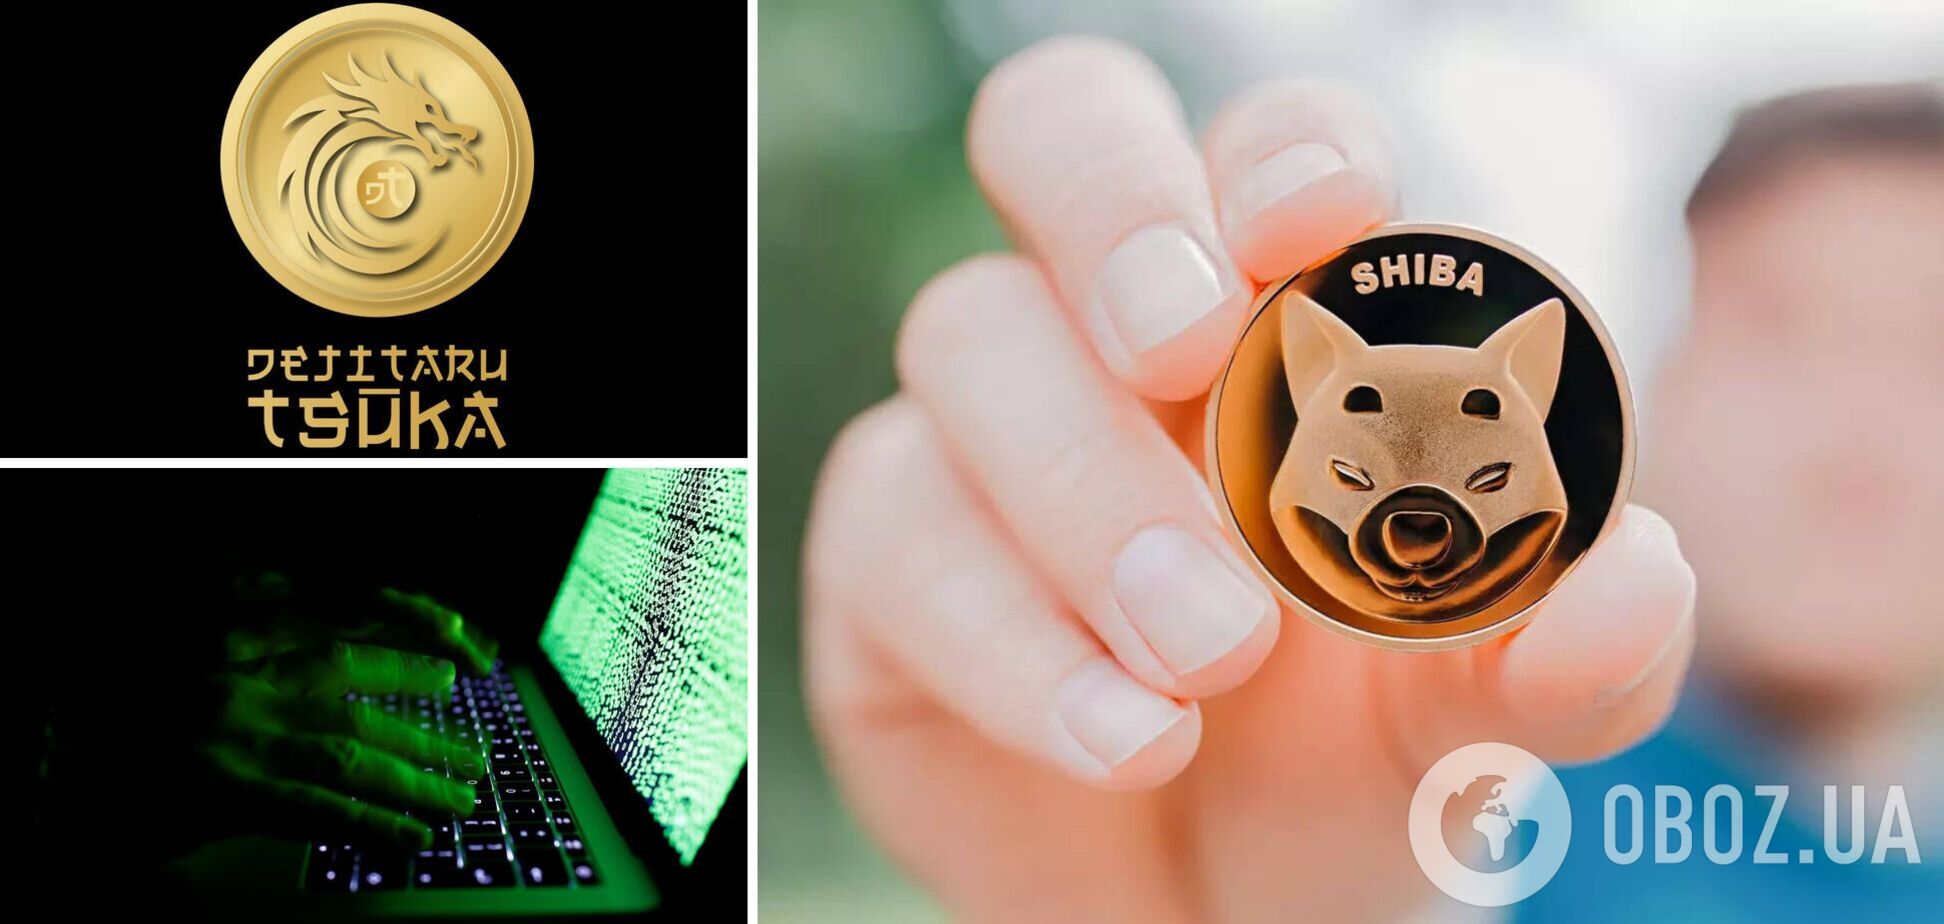 Сообщество Shiba Inu нашло 'почерк' создателя этой криптовалюты в новом проекте